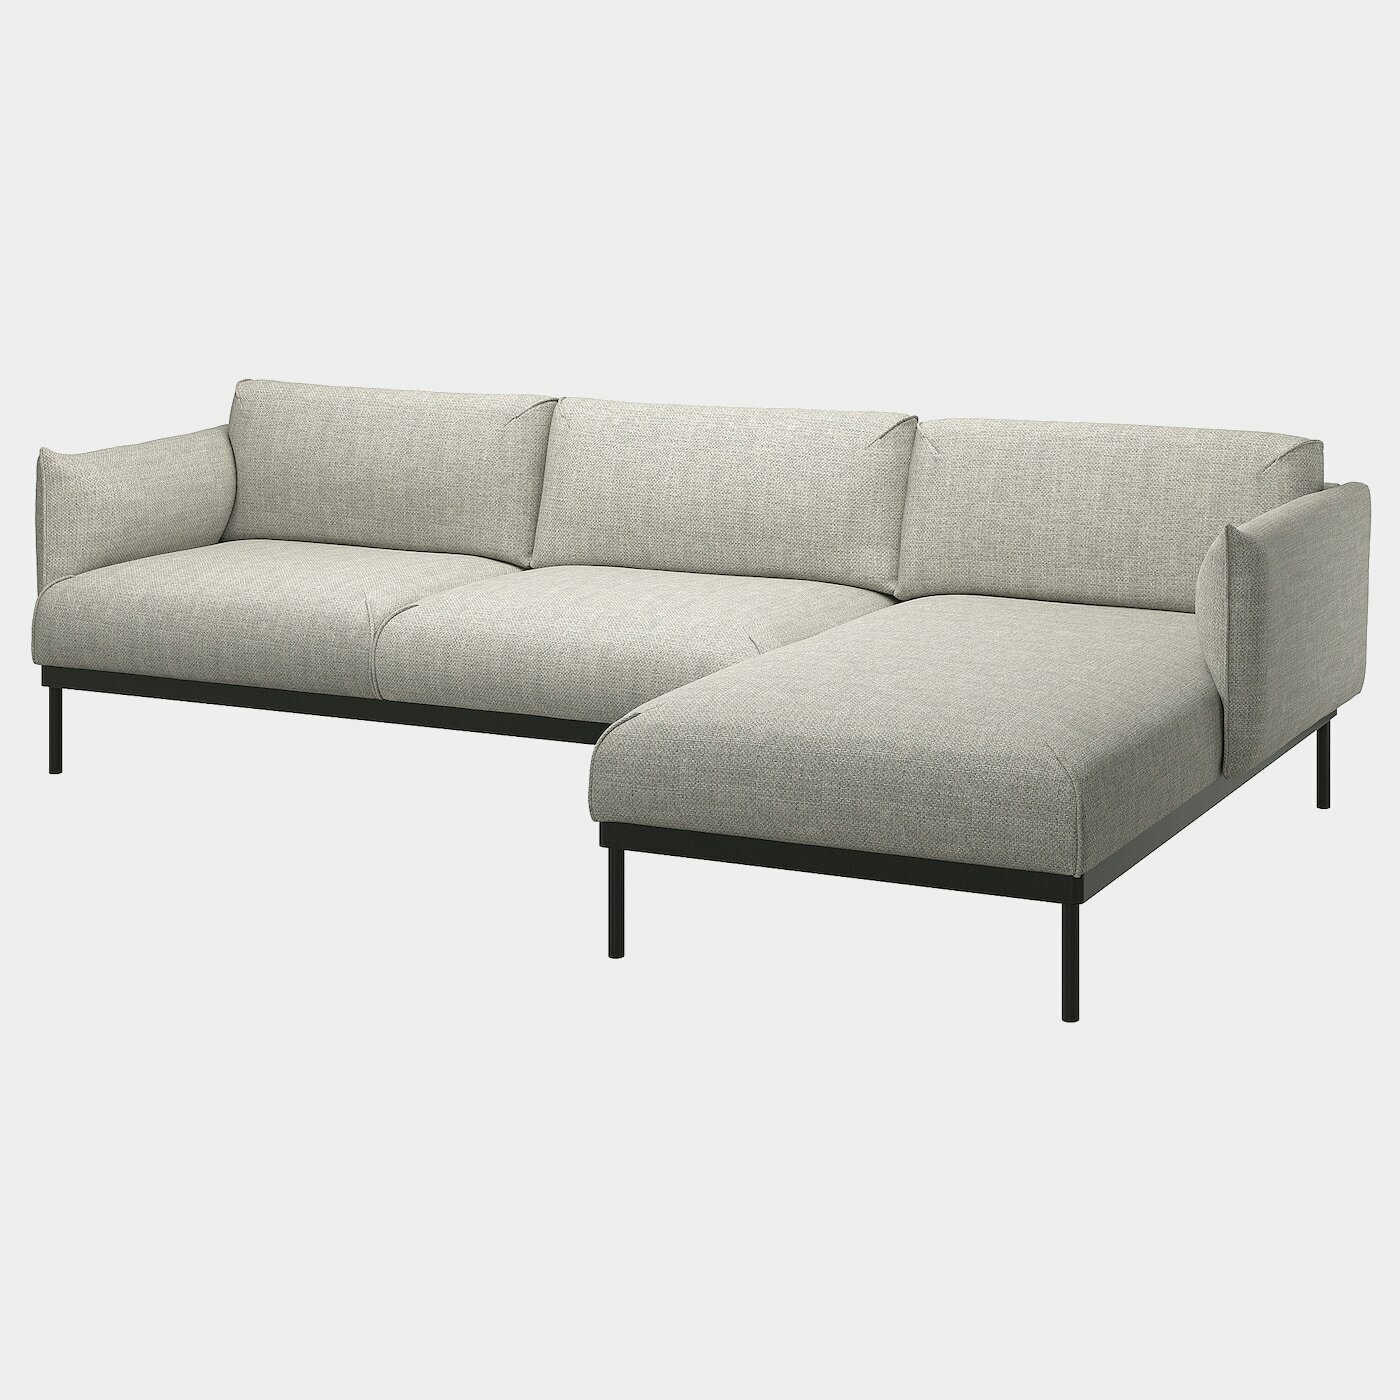 ÄPPLARYD 3er-Sofa mit Récamiere  -  - Möbel Ideen für dein Zuhause von Home Trends. Möbel Trends von Social Media Influencer für dein Skandi Zuhause.